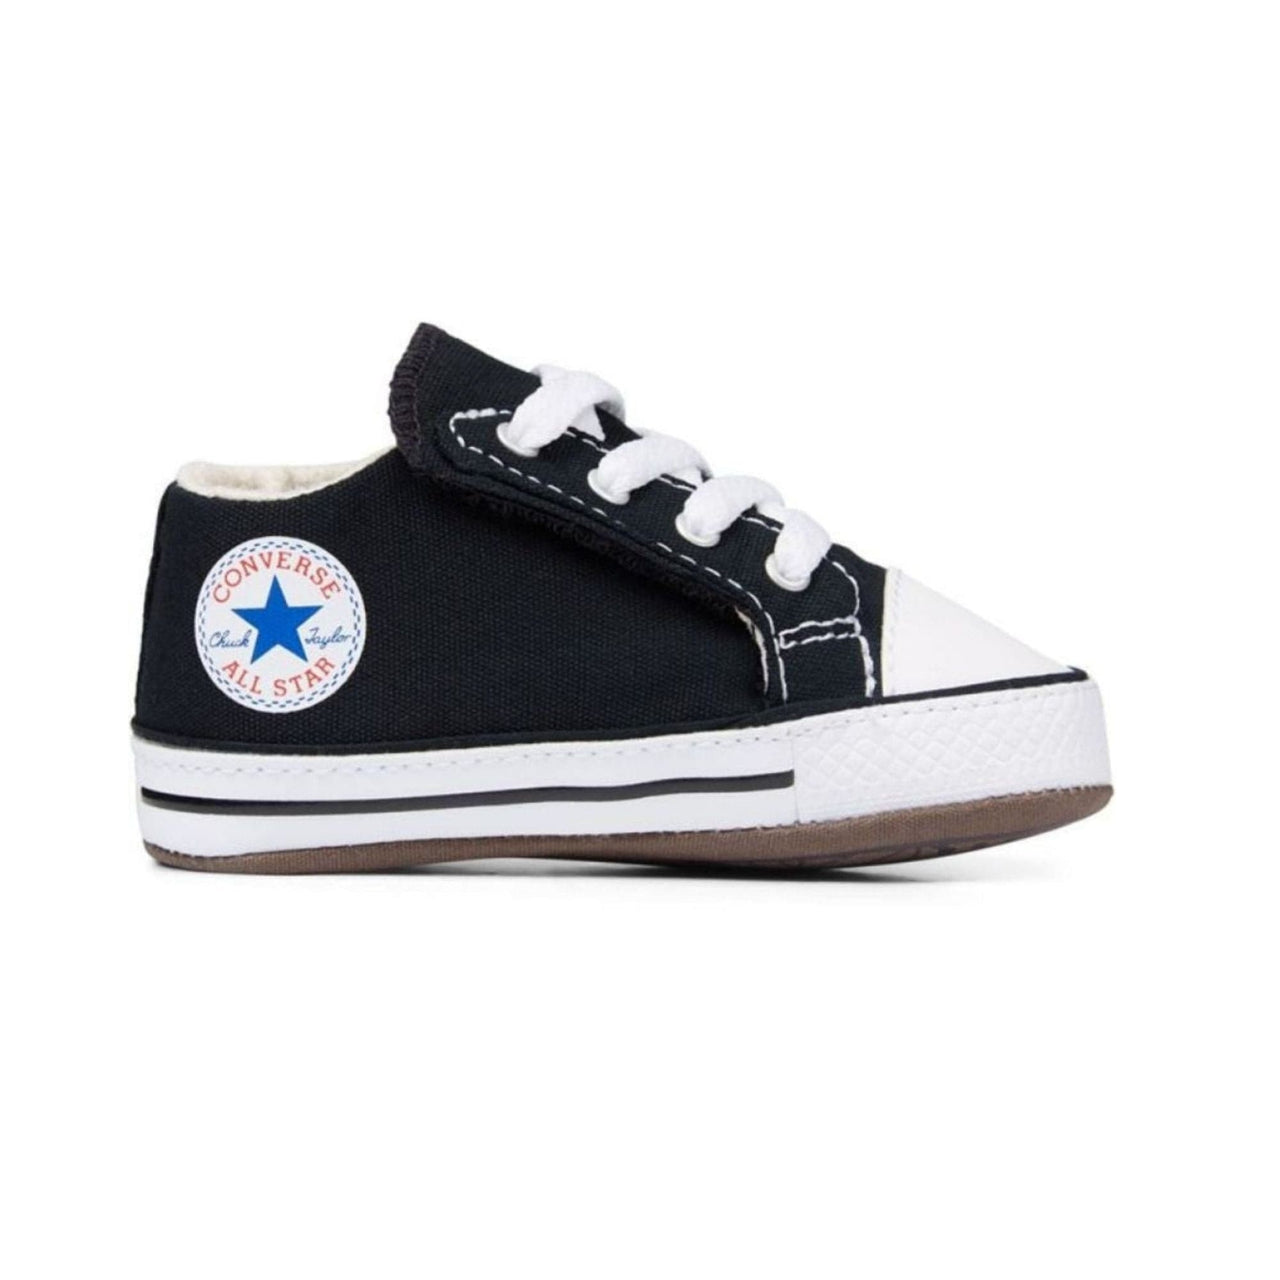 Zapatillas Converse Bebe Chuck Taylor All Star Cribster | Comprar Online en Much Sneakers®